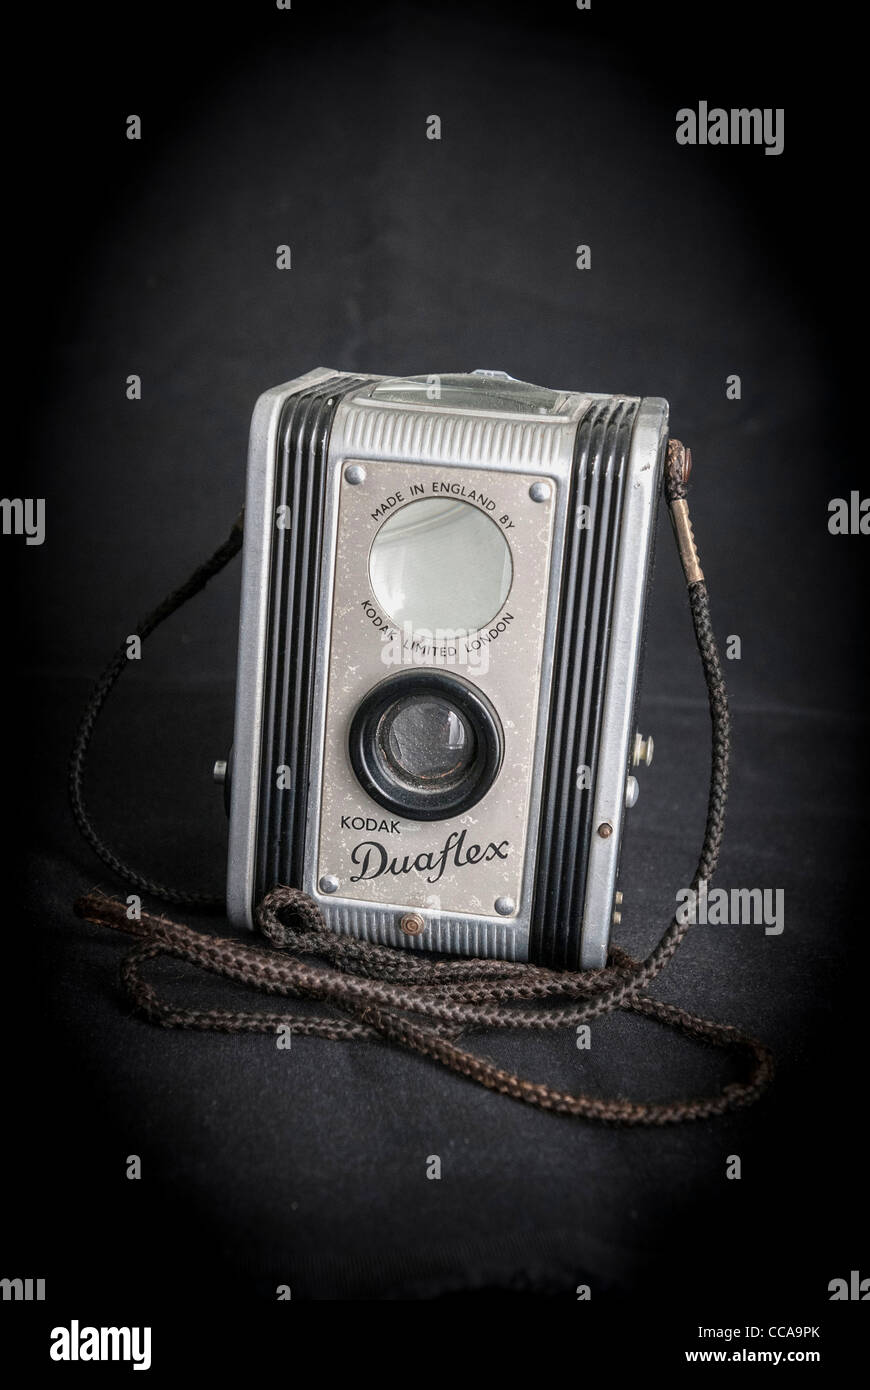 Fotocamera kodak antica immagini e fotografie stock ad alta risoluzione -  Alamy